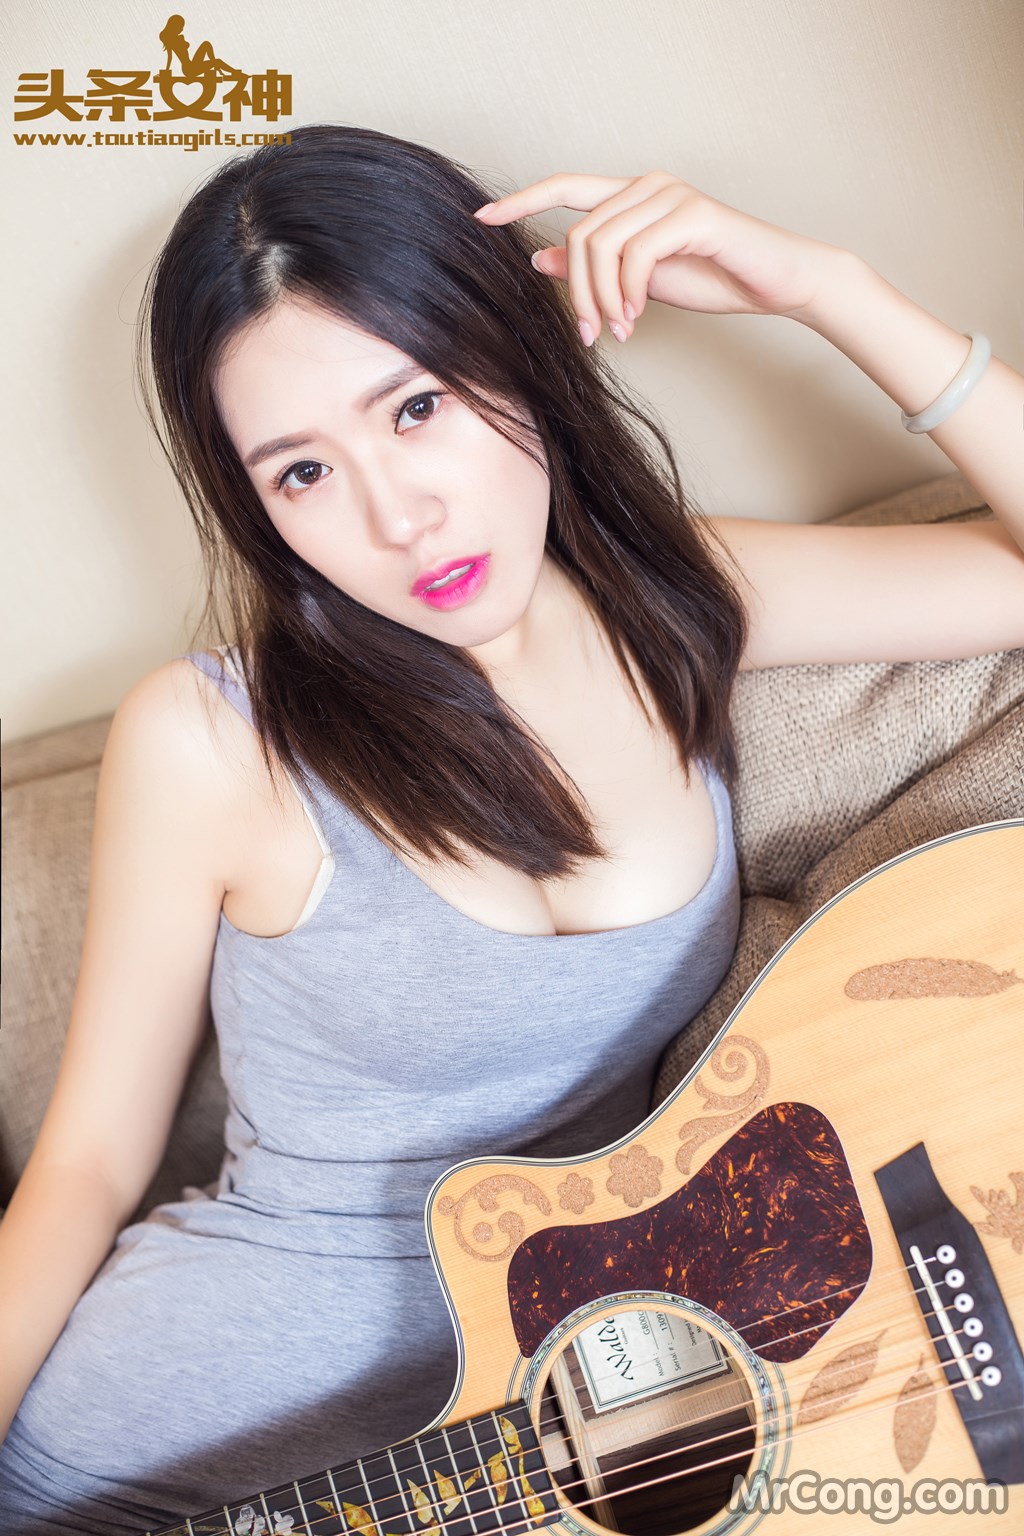 TouTiao 2016-08-05: Model Xiao Xi (筱 溪) (39 photos) photo 1-9